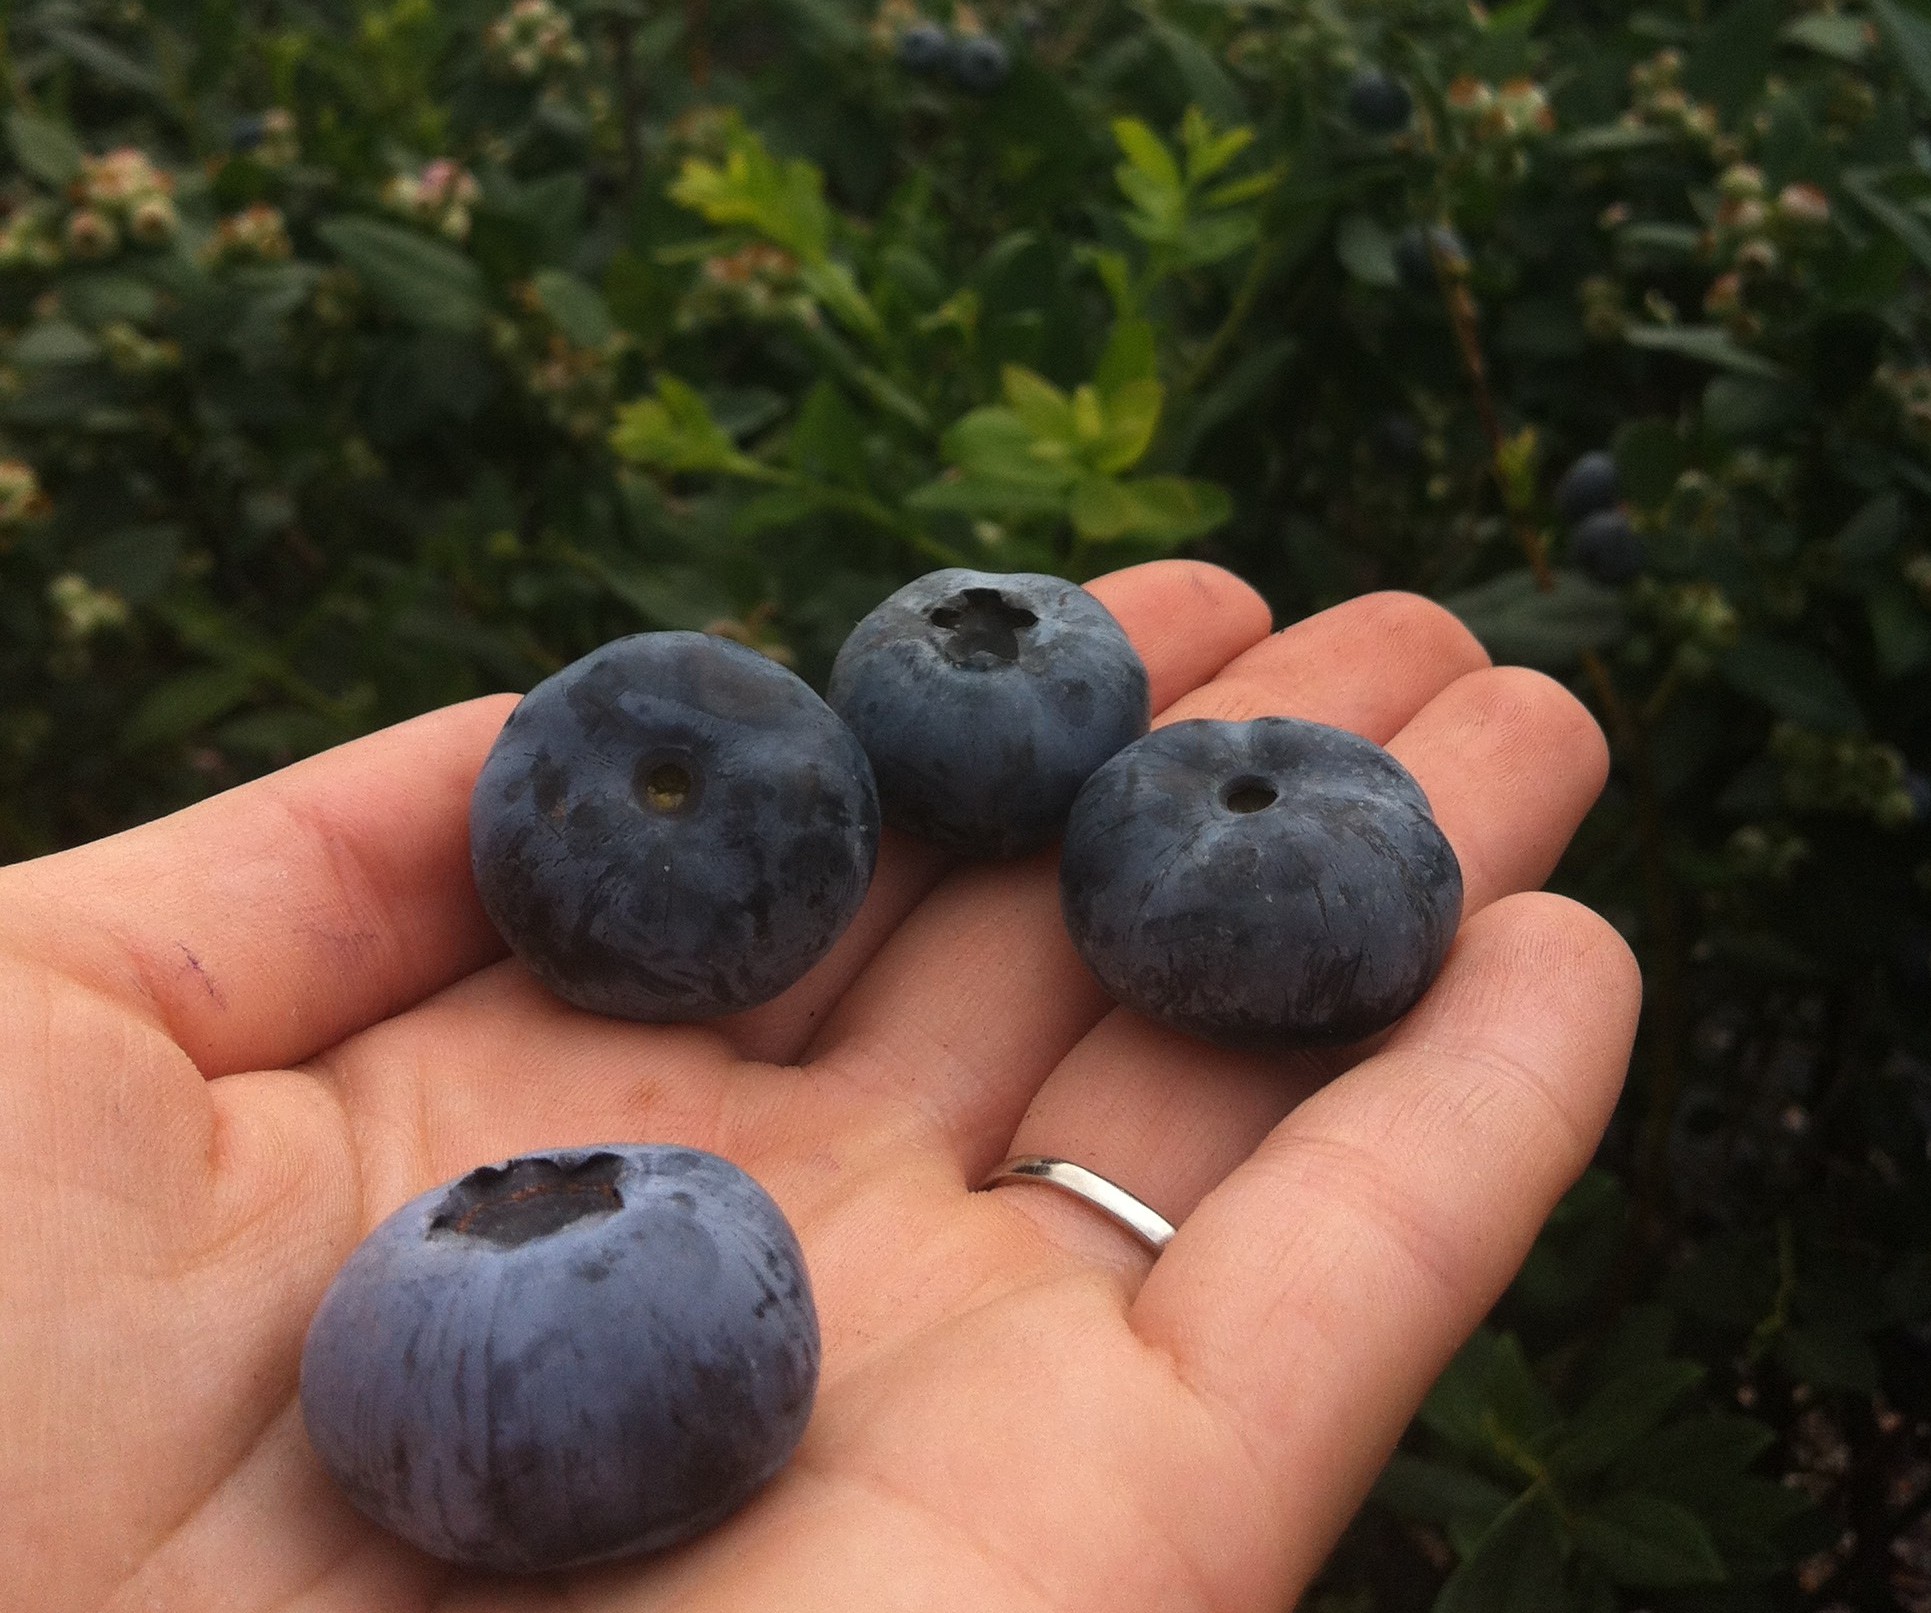 U Pick Blueberries | Outdoor Family Nature Activities ...